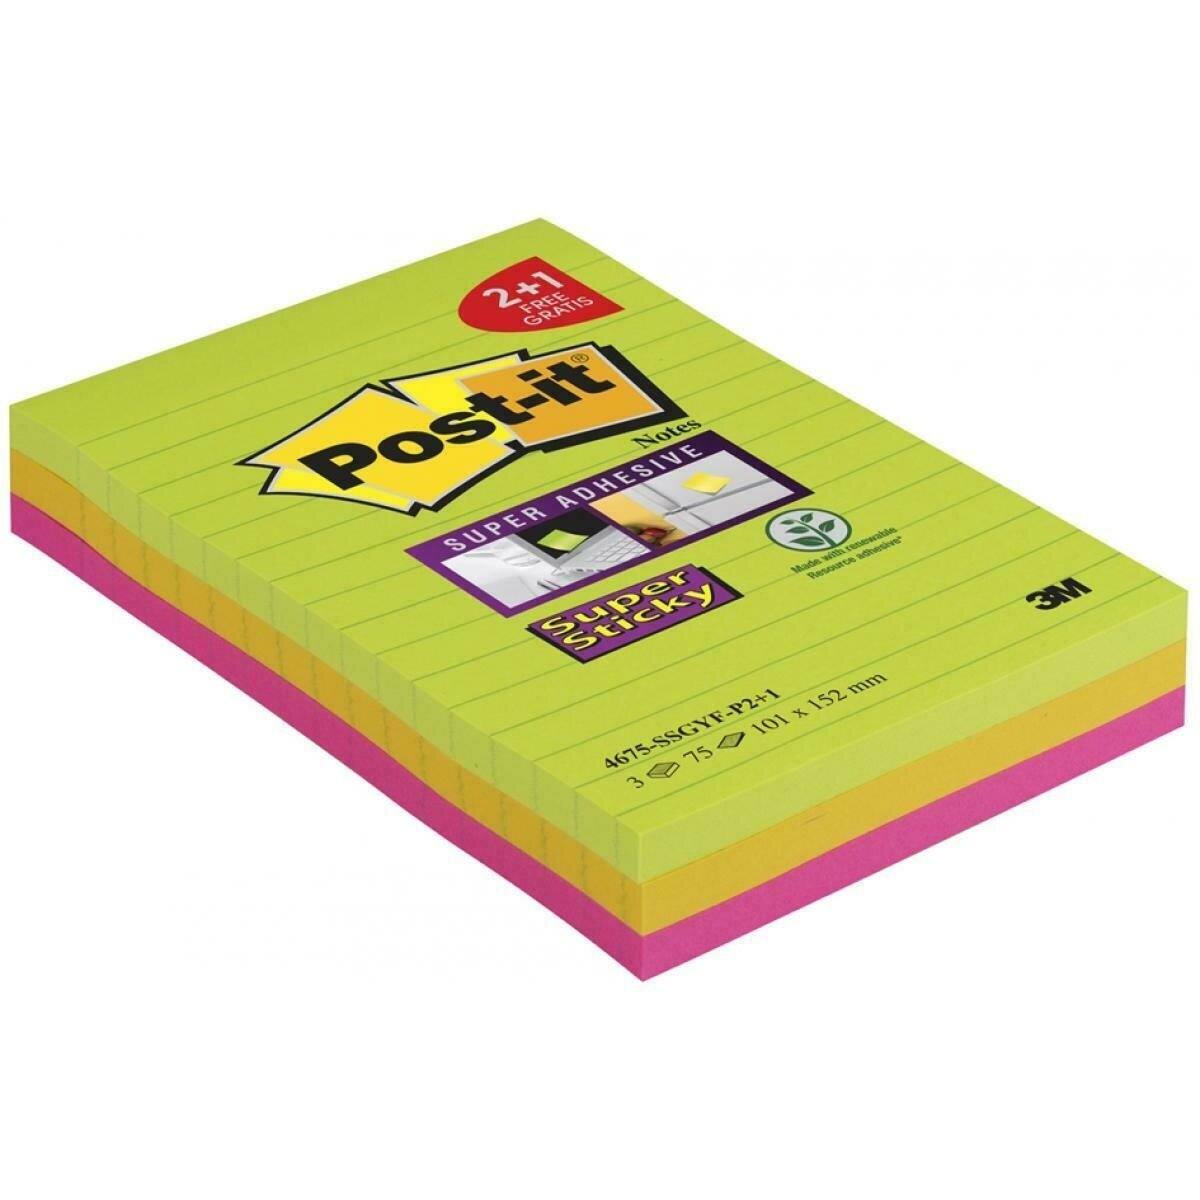 3M Post-it Super Sticky Notes Promotion 4675-SSGYF-P2+1 3 Blöcke á 75 Blatt zum Vorteilspreis, neongrün, ultragelb, -pink, 101  mm x 152 mm, liniert, PEFC zertifiziert